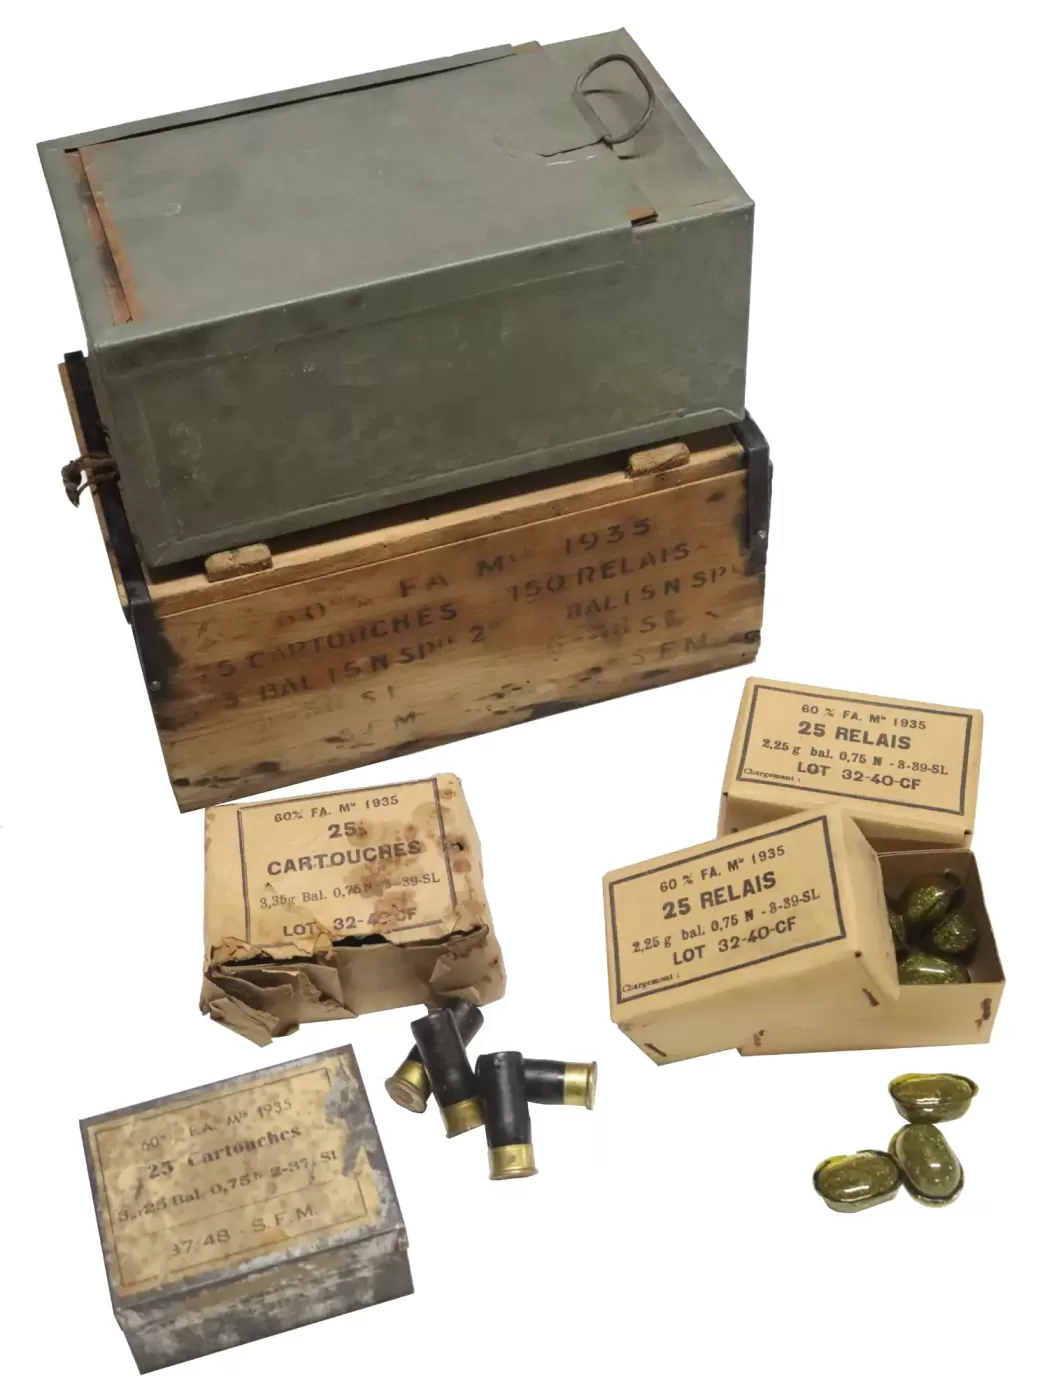 Munition pour mortier de 60 mm FA mle 1935 (60 FA 35) 